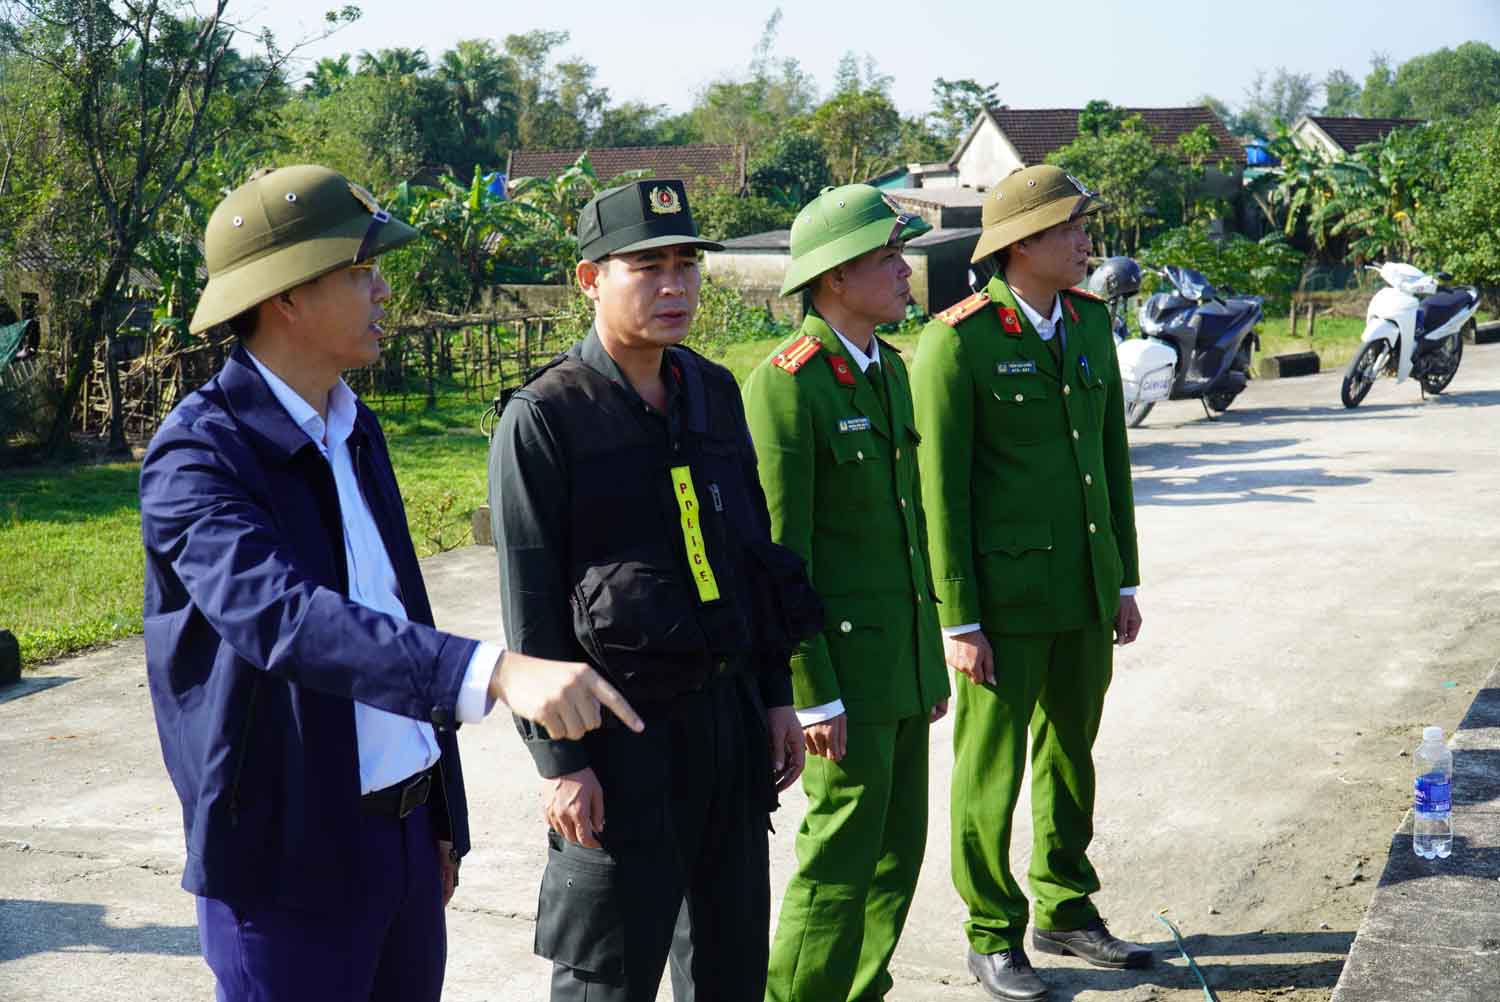 Thượng tá Trần Ngọc Tố - Trưởng Công an huyện Cẩm Xuyên (ngoài cùng bên trái) trực tiếp có mặt tại hiện trường truy tìm 2 phạm nhân ở khu vực rừng bần. Ảnh: Trần Tuấn.